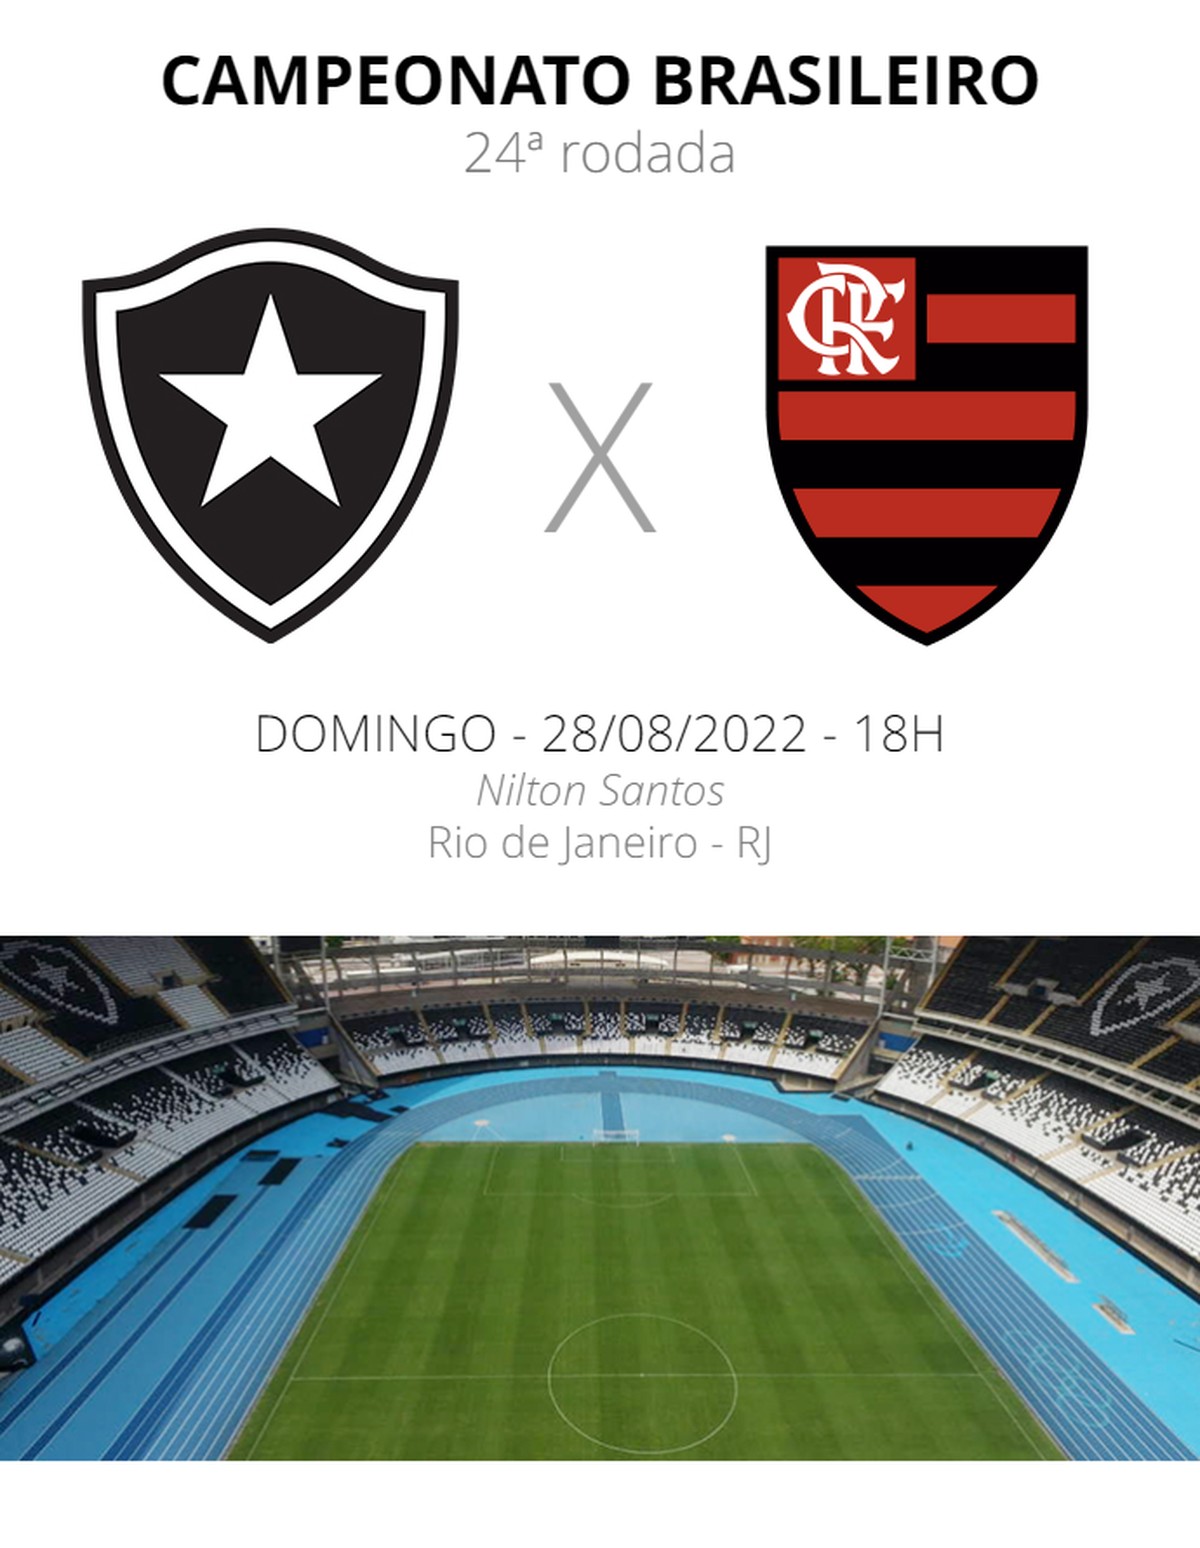 Botafogo x Flamengo: ver dónde mirar, alineaciones, malversación y arbitraje |  serie brasileña